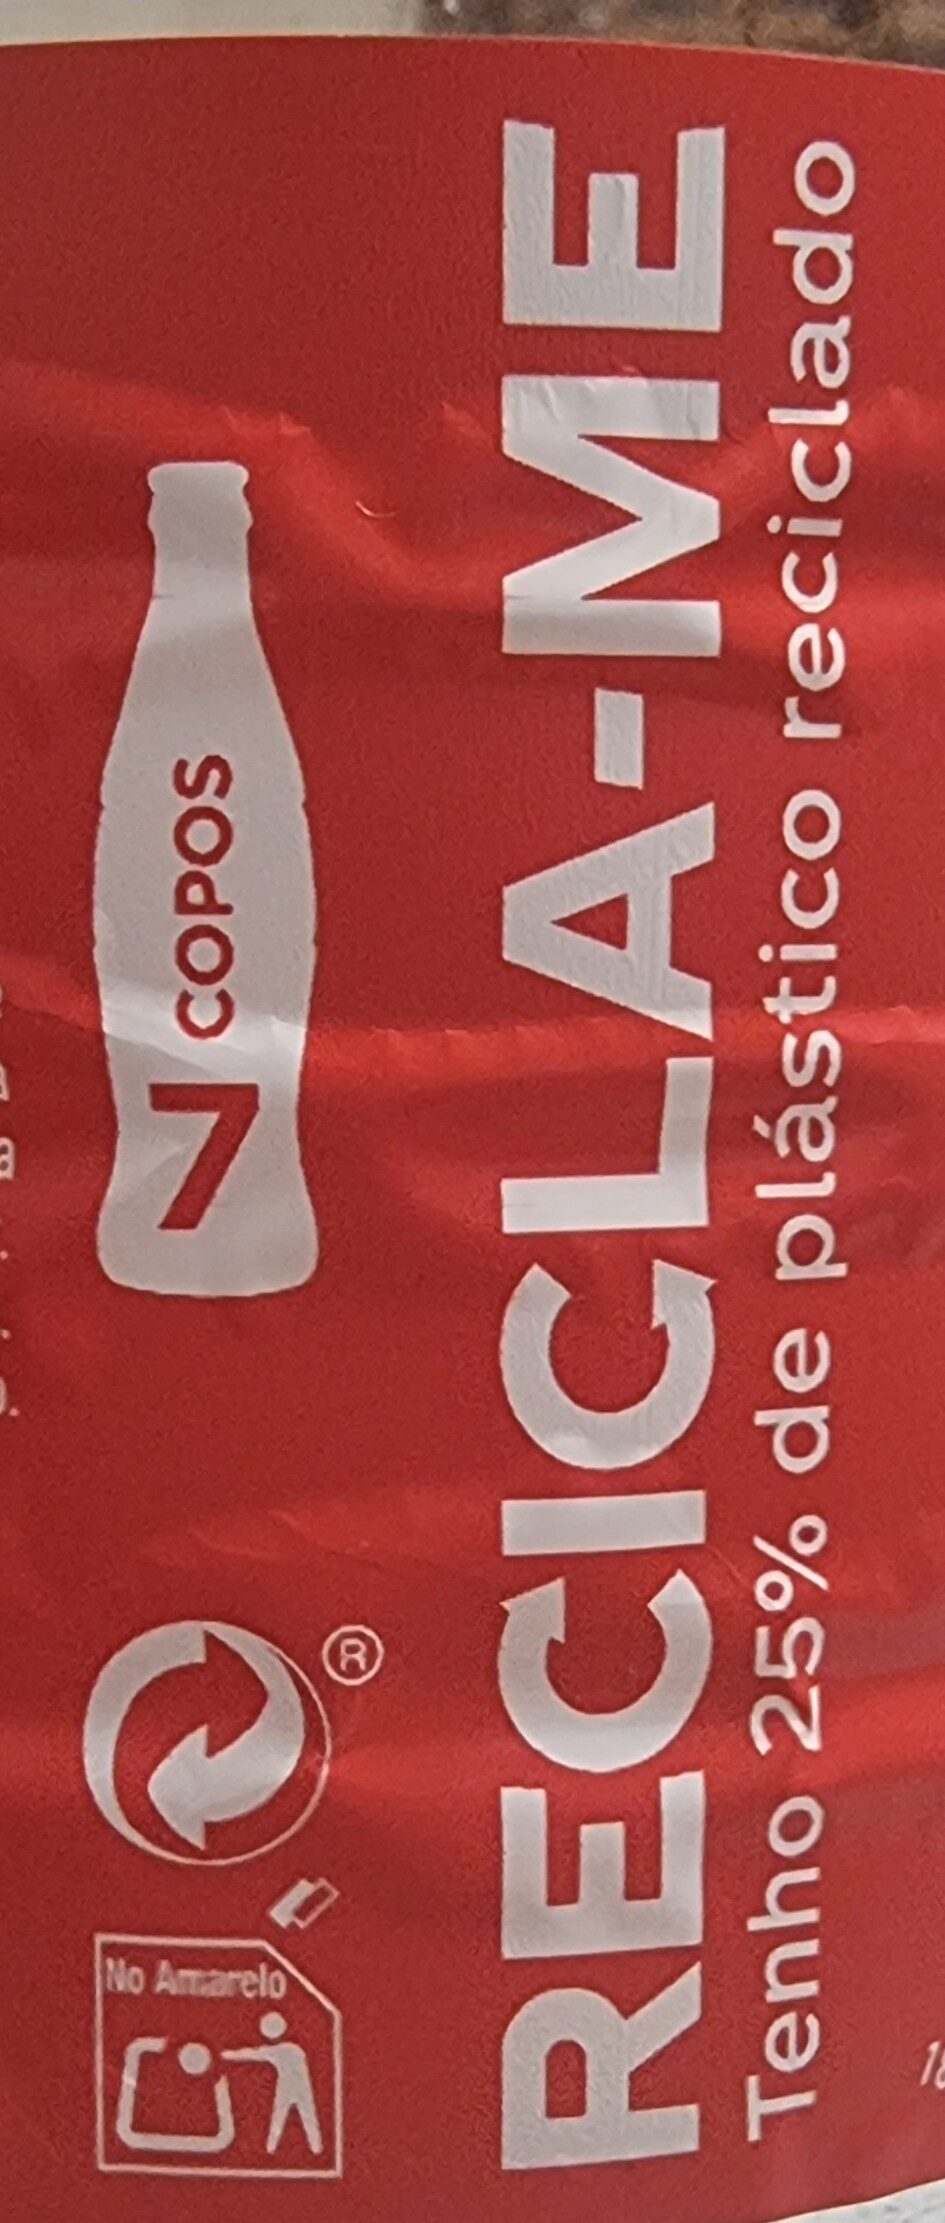 Coca Cola - Instruções de reciclagem e/ou informações sobre embalagem